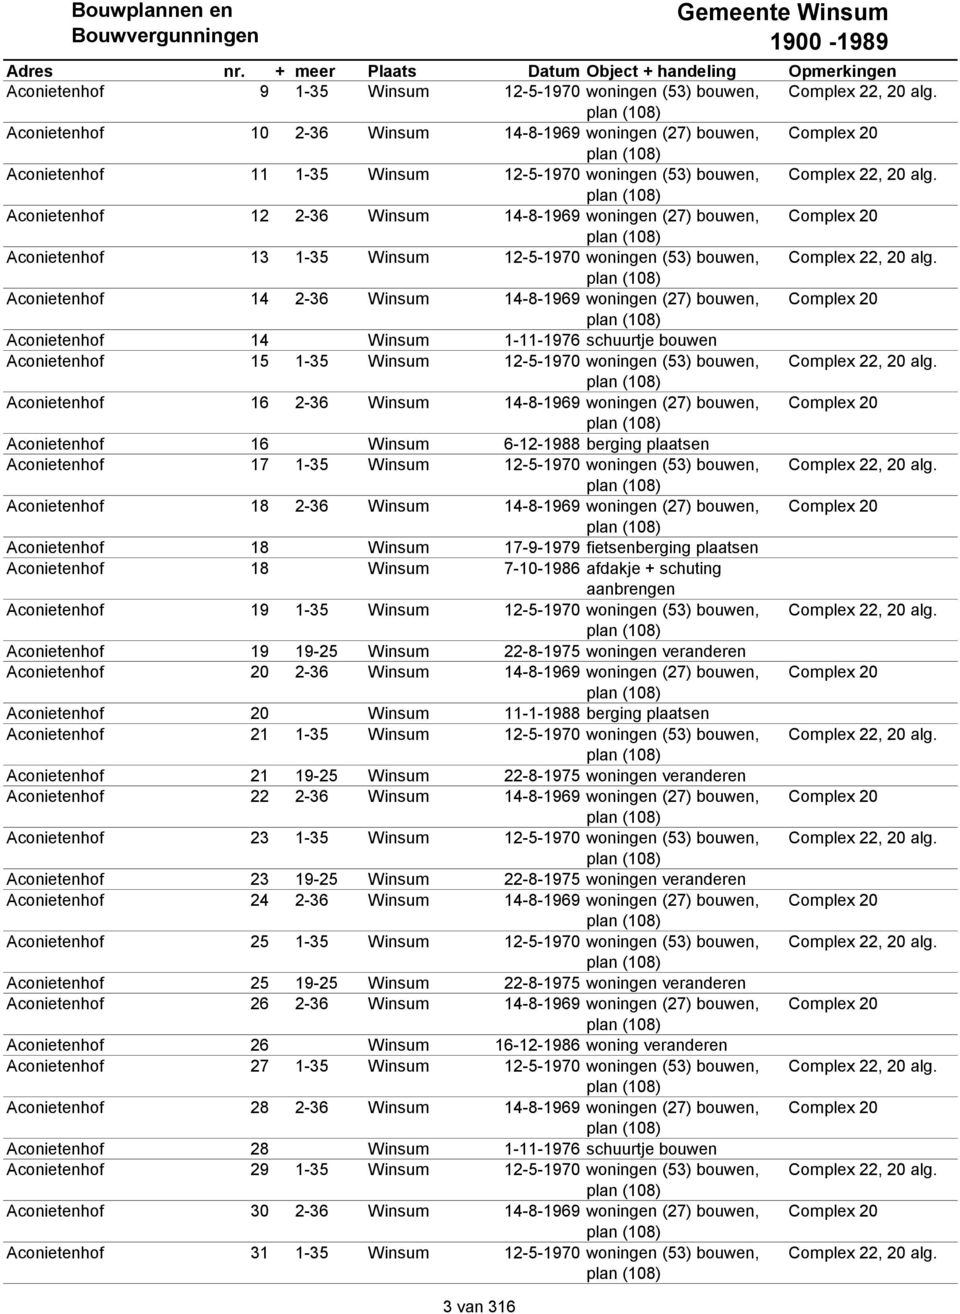 plan (108) Aconietenhof 12 2-36 Winsum 14-8-1969 woningen (27), Complex 20 plan (108) Aconietenhof 13 1-35 Winsum 12-5-1970 woningen (53), Complex 22, 20 alg.